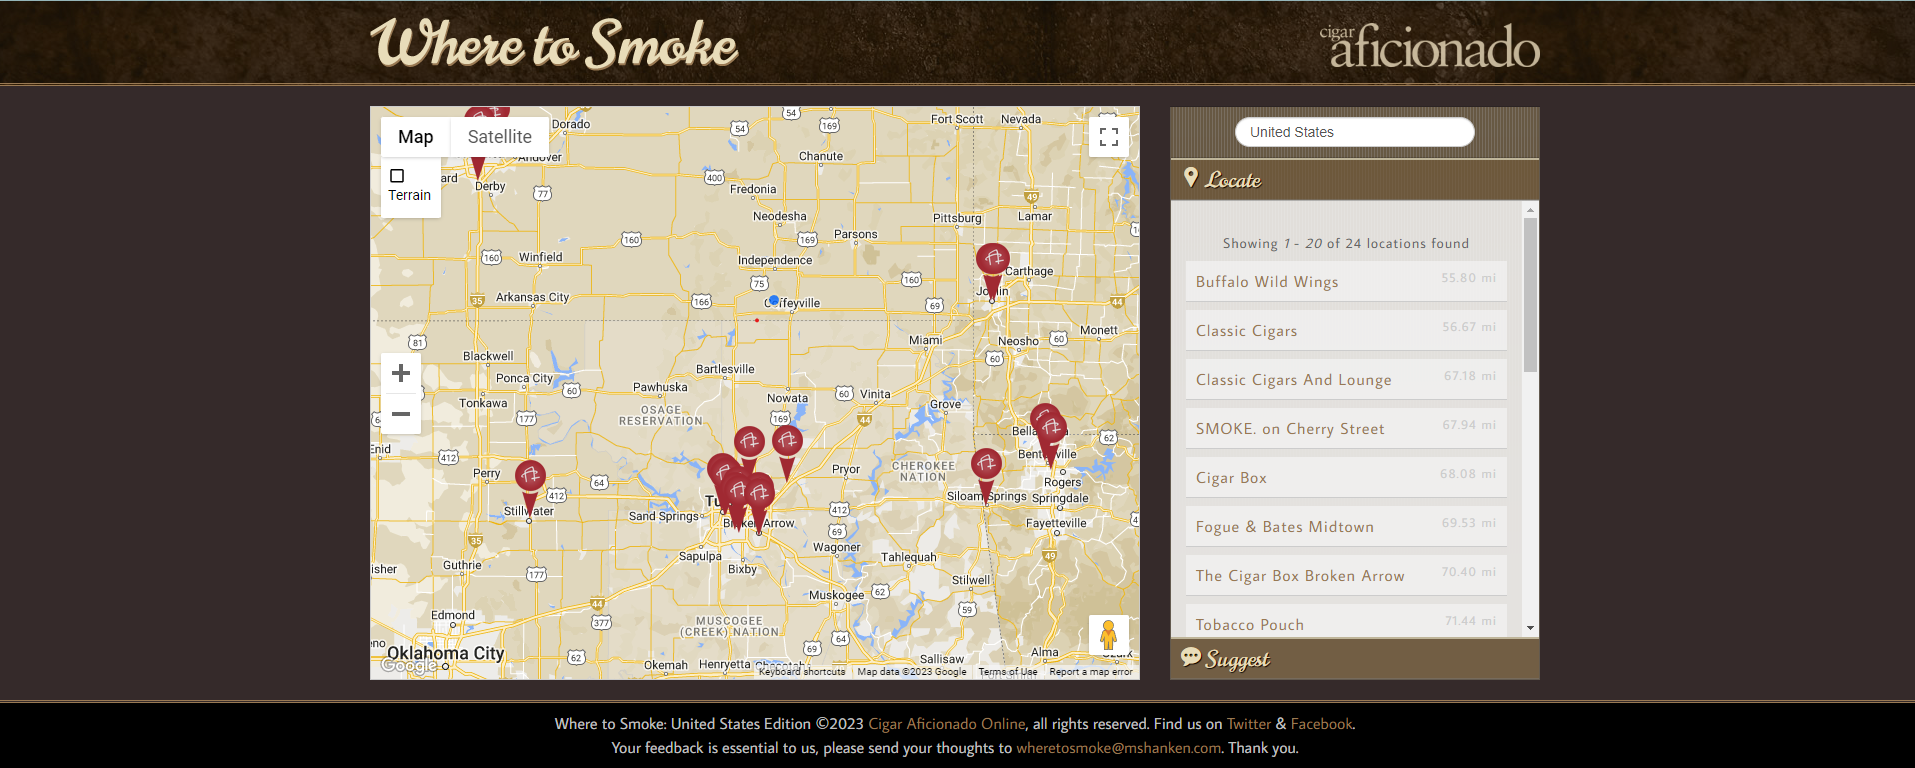 Cigar Aficionado app "Where To Smoke"